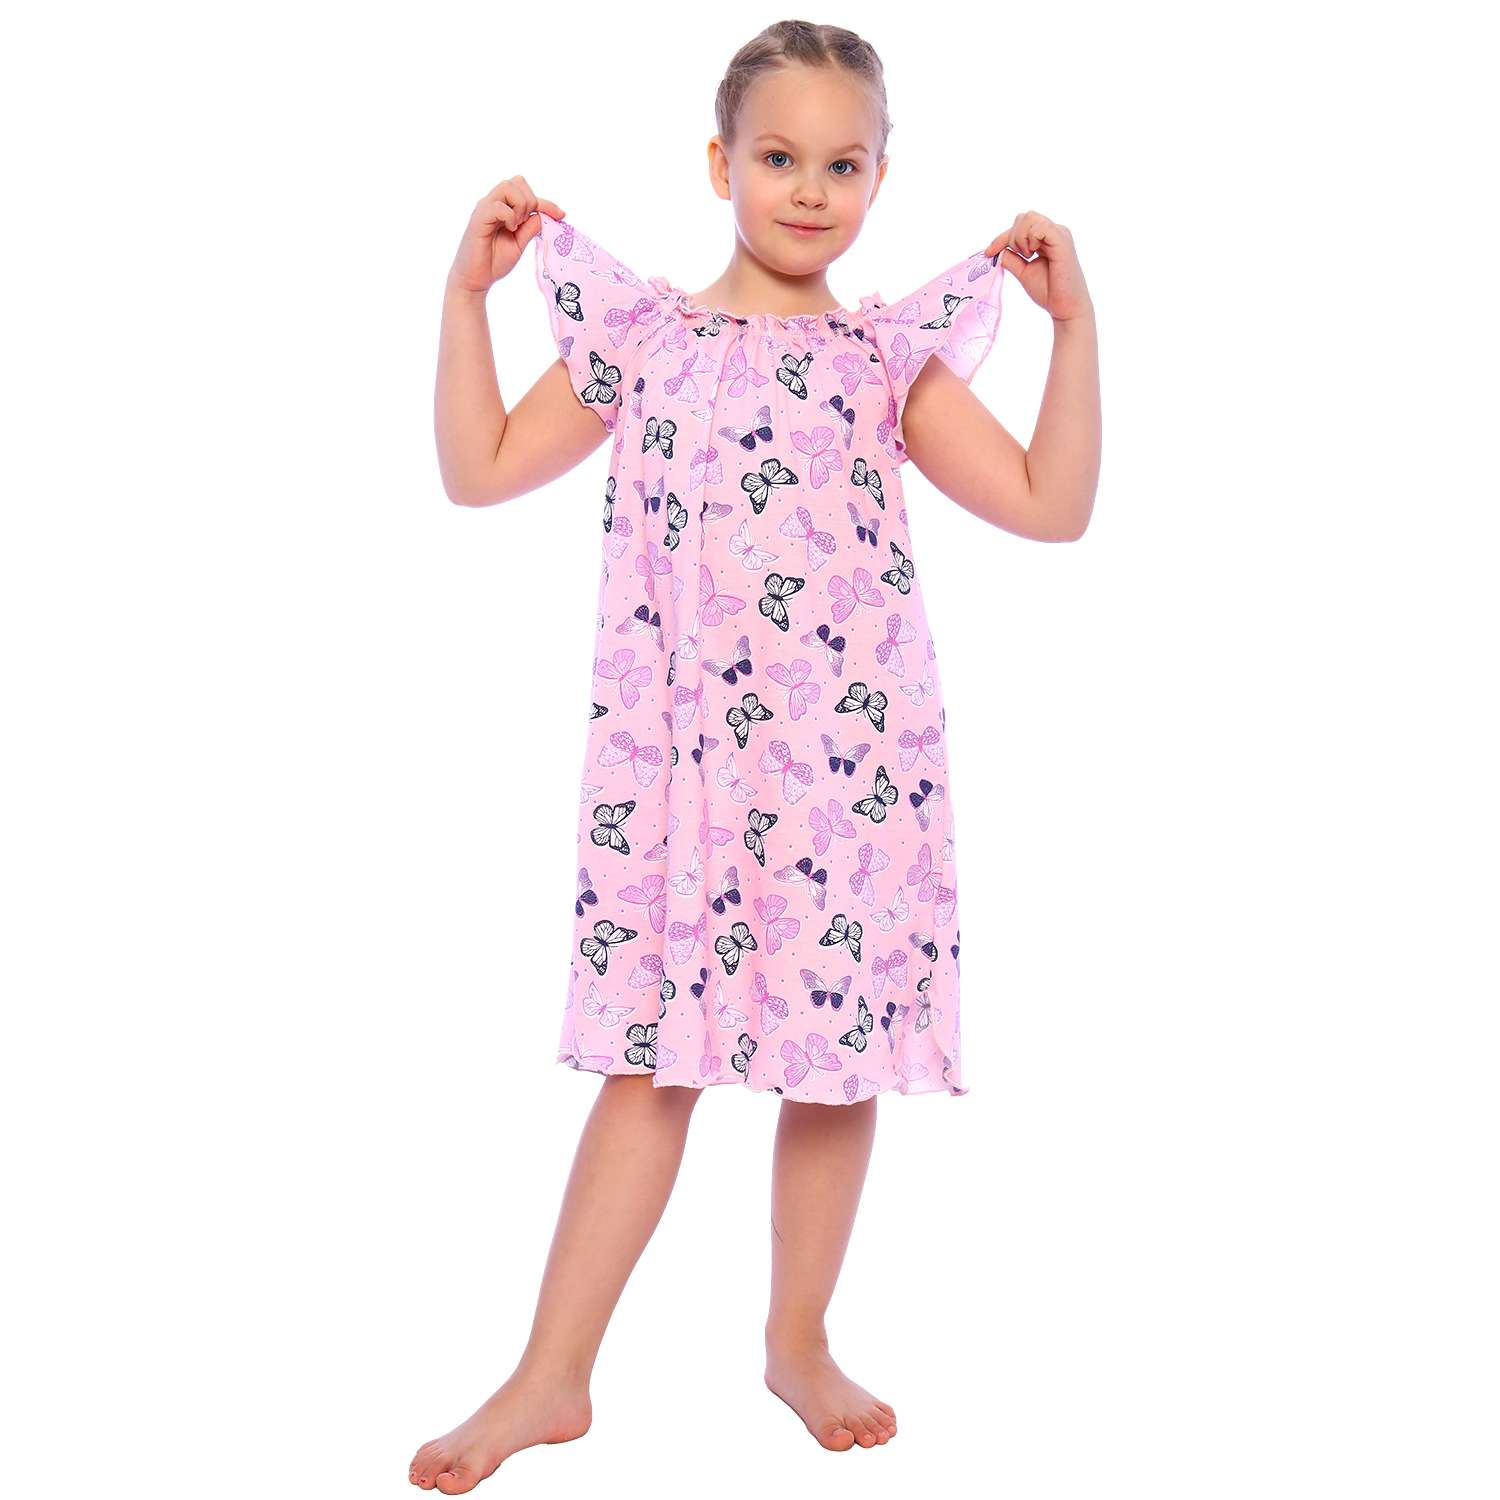 Сорочка ночная Детская Одежда 0003К/розовый2 - фото 1